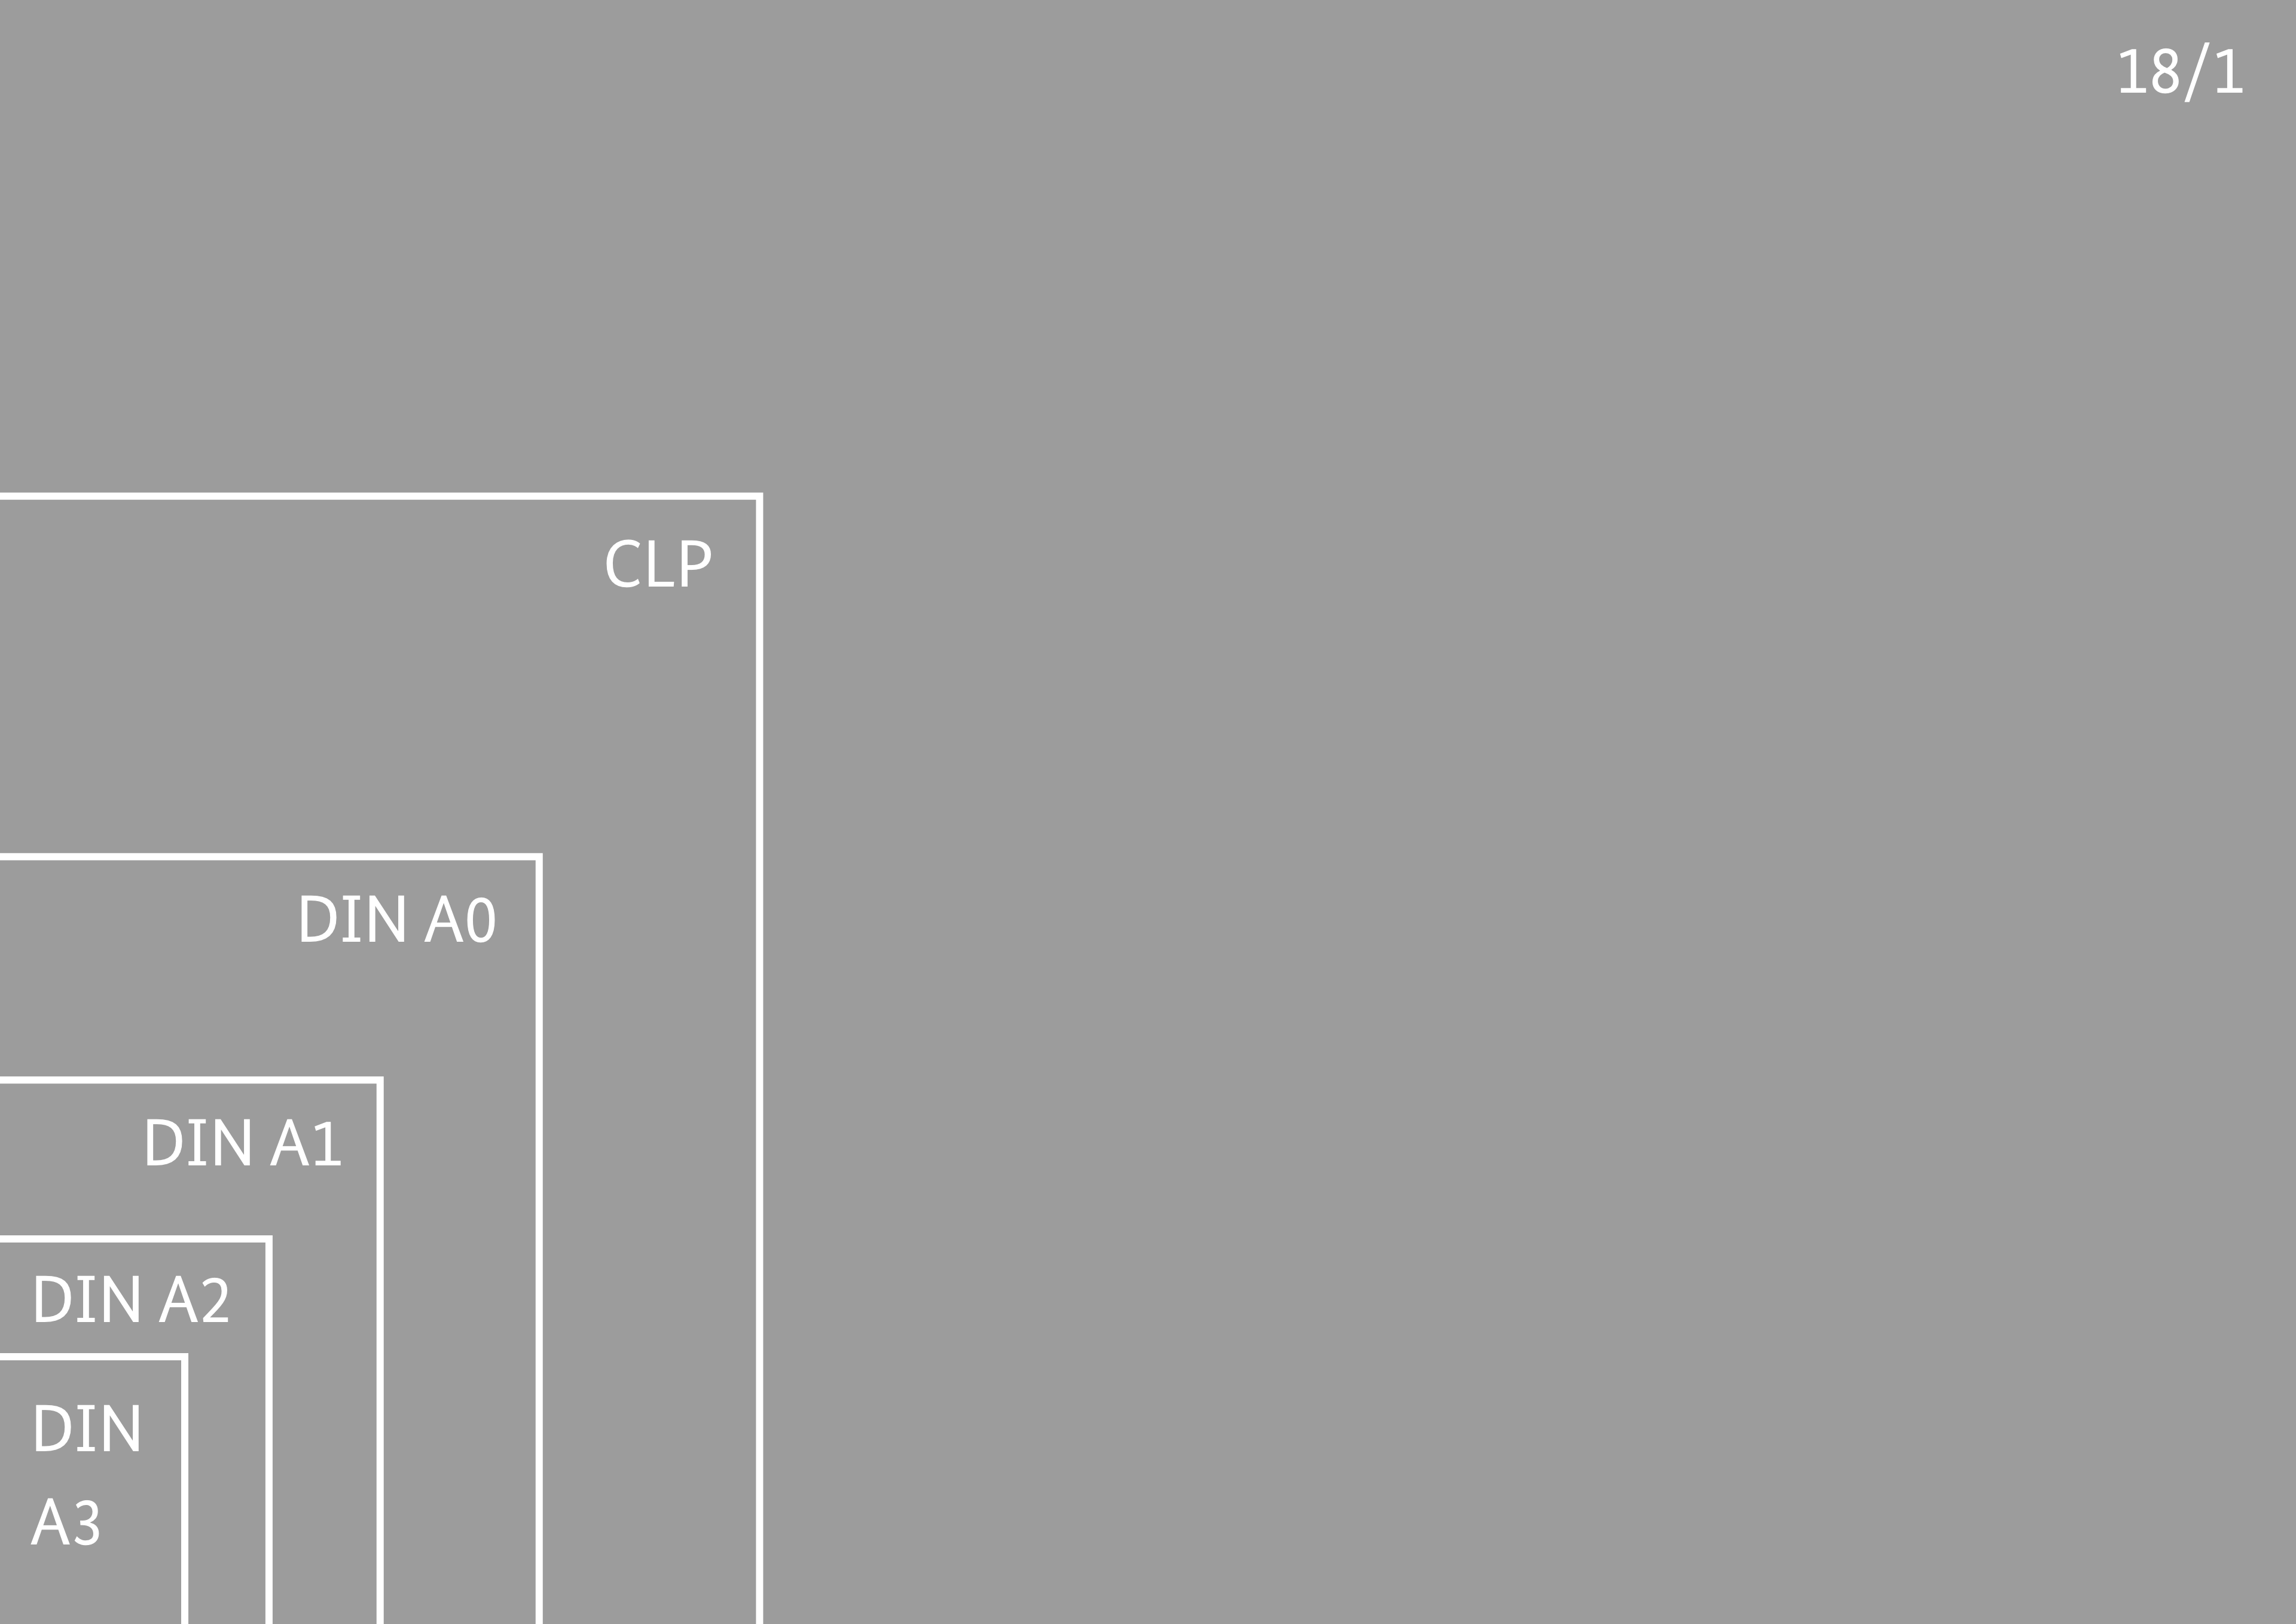 Schematische Darstellung in proportionaler Größe zueinander: DIN A3, DIN A2, DIN A1, DIN A0, CLP, 18/1.